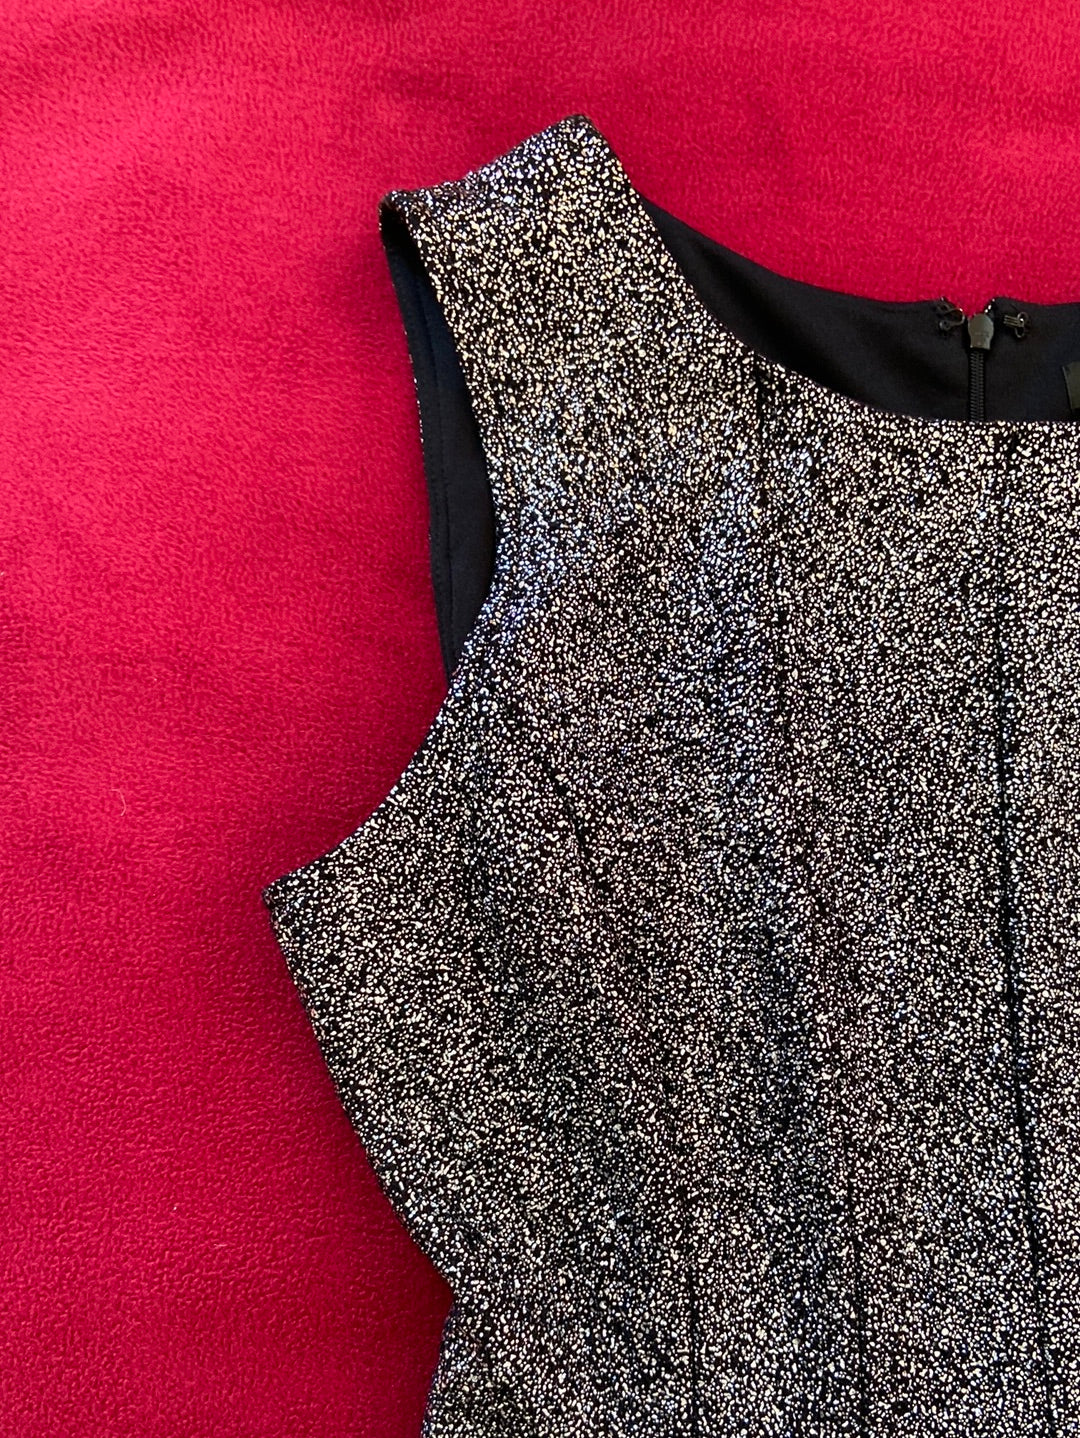 OMBRÉ SHIMMER MSK Silver Dress Size 12